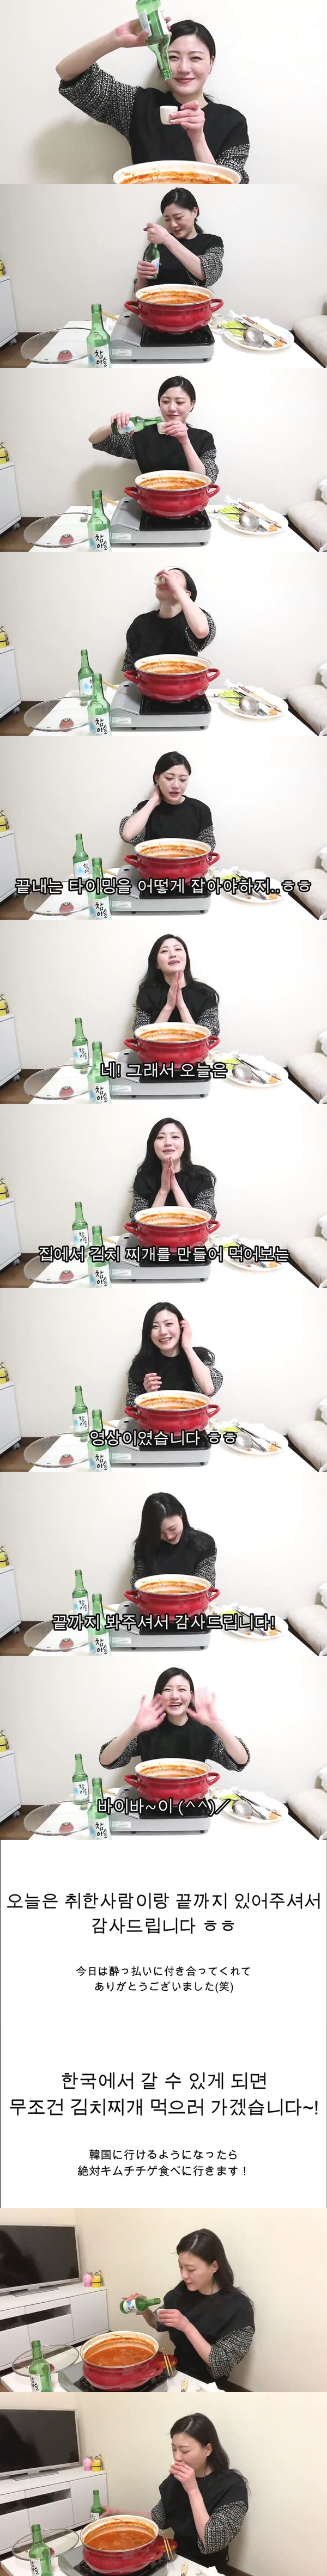 김치찌개 끓여먹기에 도전하는 일본 유투버.JPG